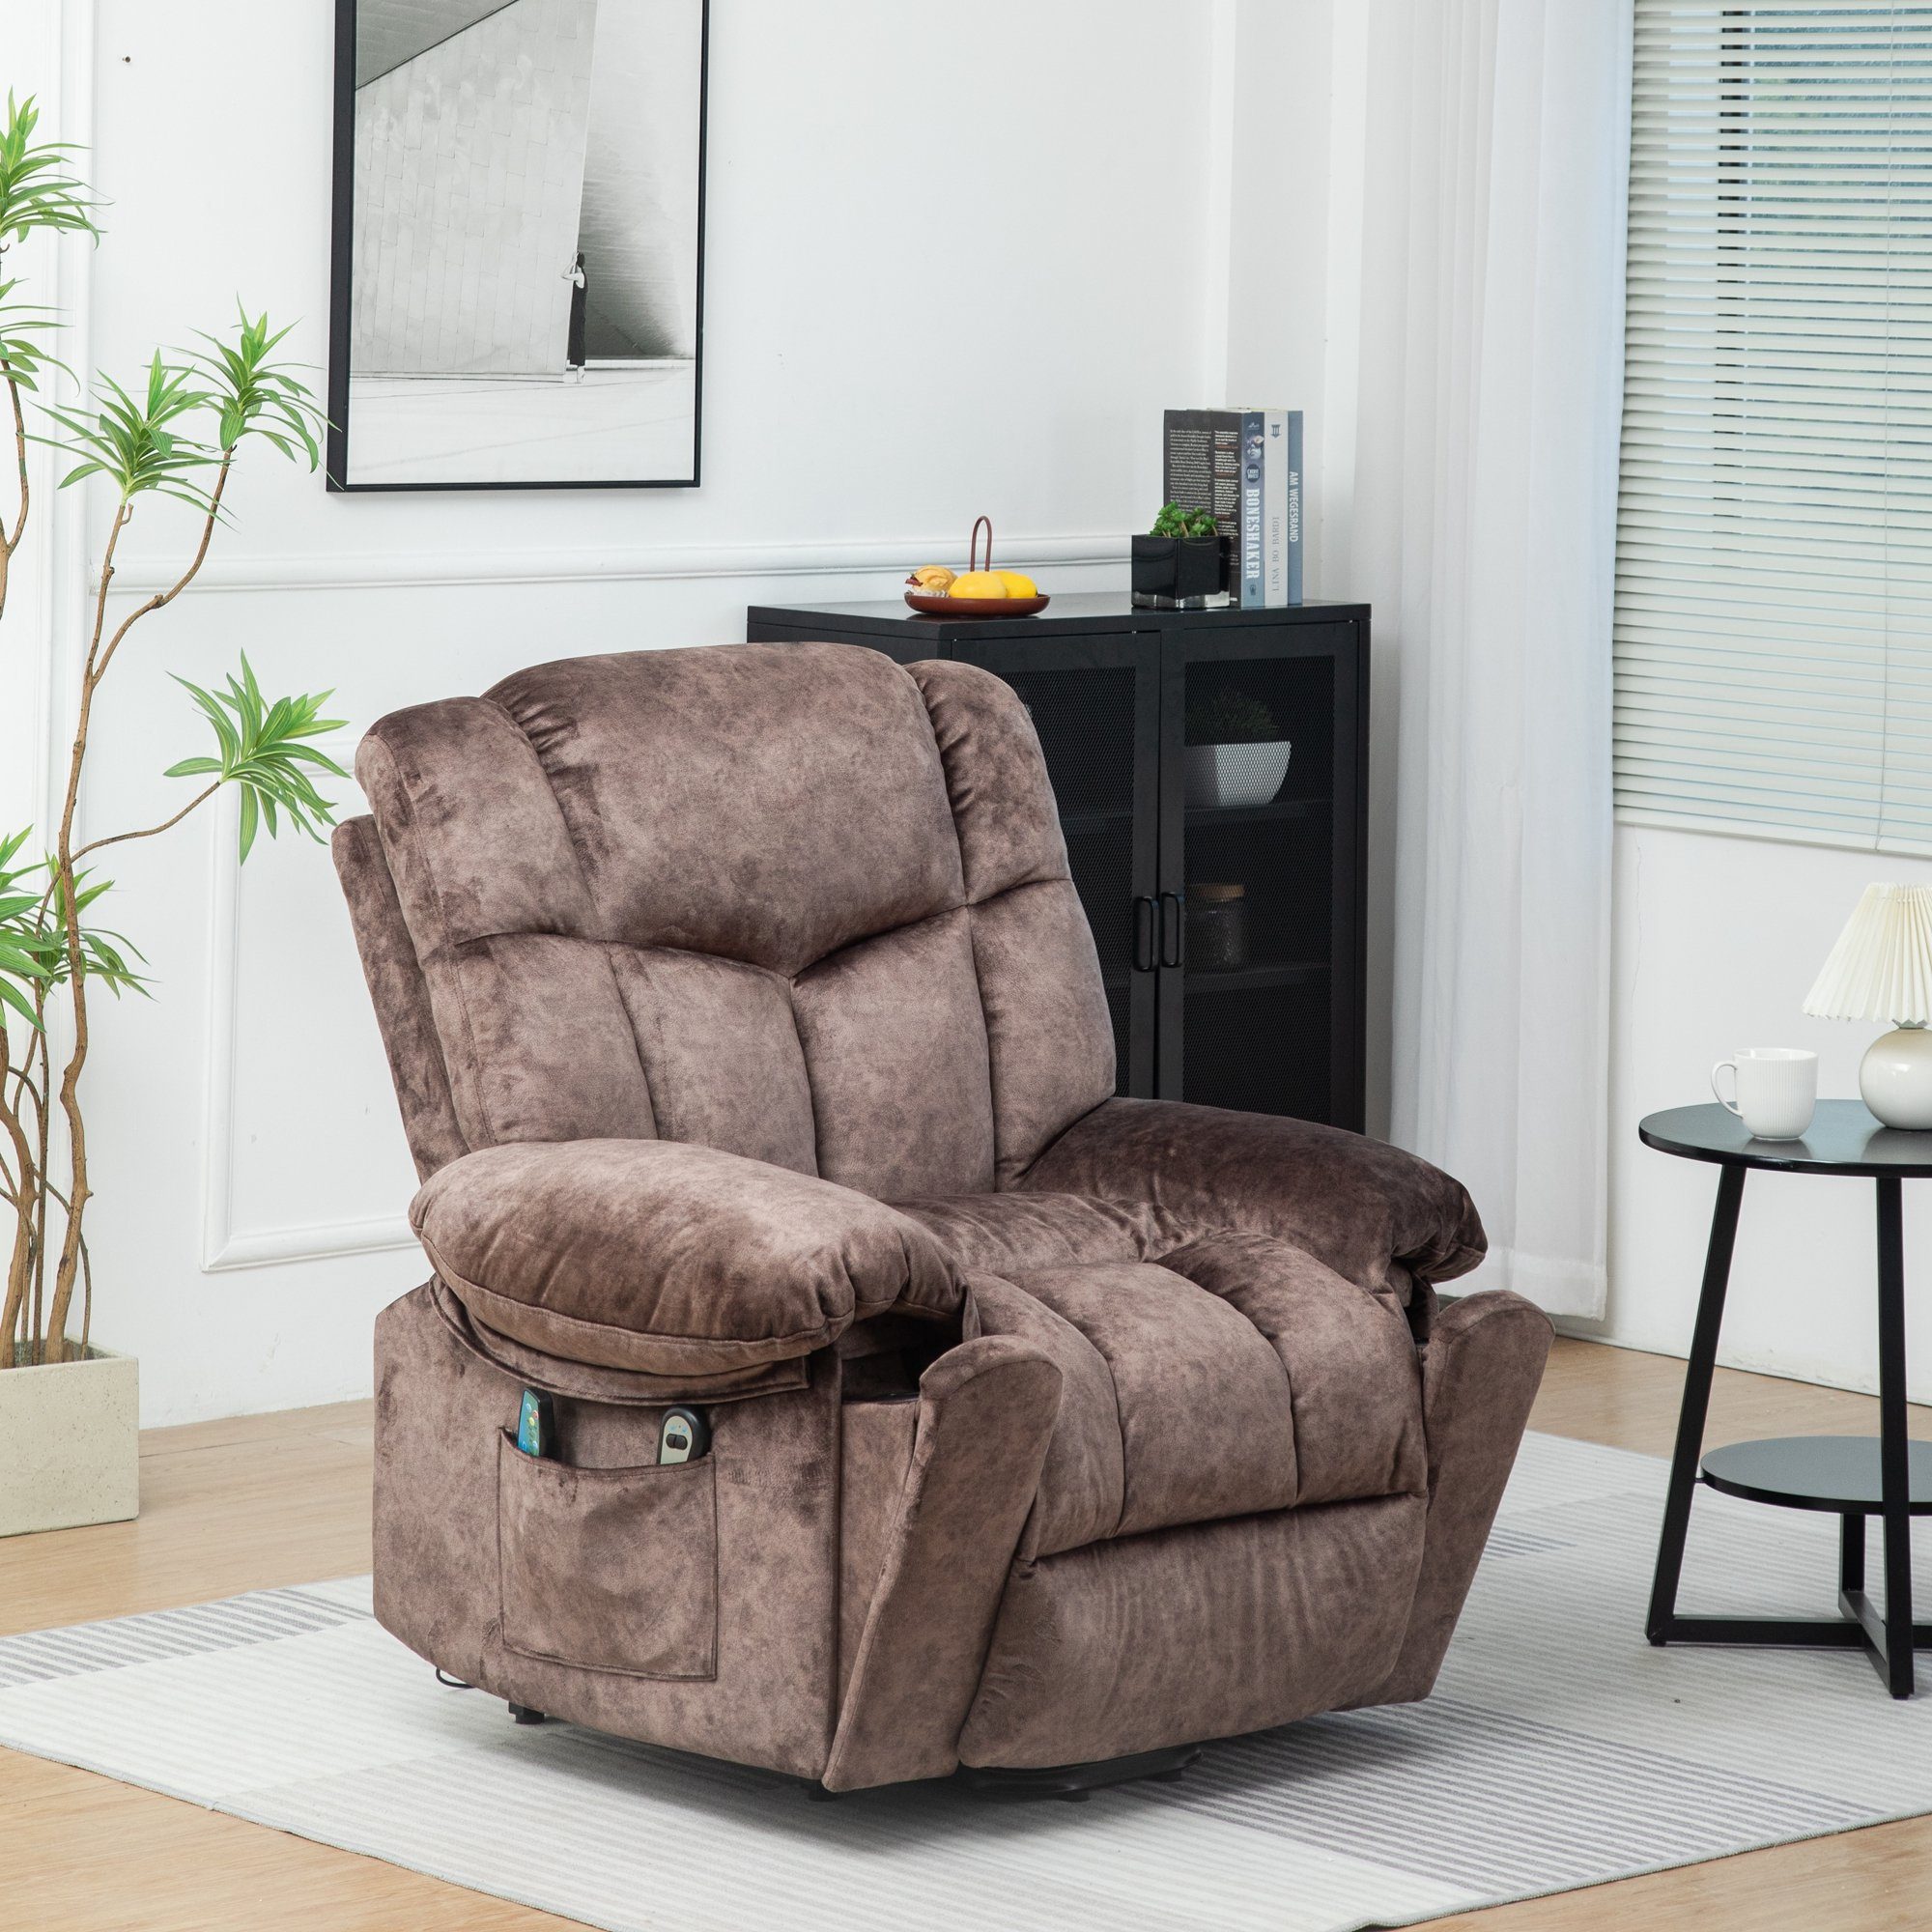 HAUSS SPLOE TV-Sessel Massagesessel Fernsehsessel Elektrischer Relaxsessel Einzelsessel (Elegantes Design mit Samtoberfläche und Aufbewahrungstaschen., liegen Einzelsessel Fernsehsessel Liegestuhl) Braun